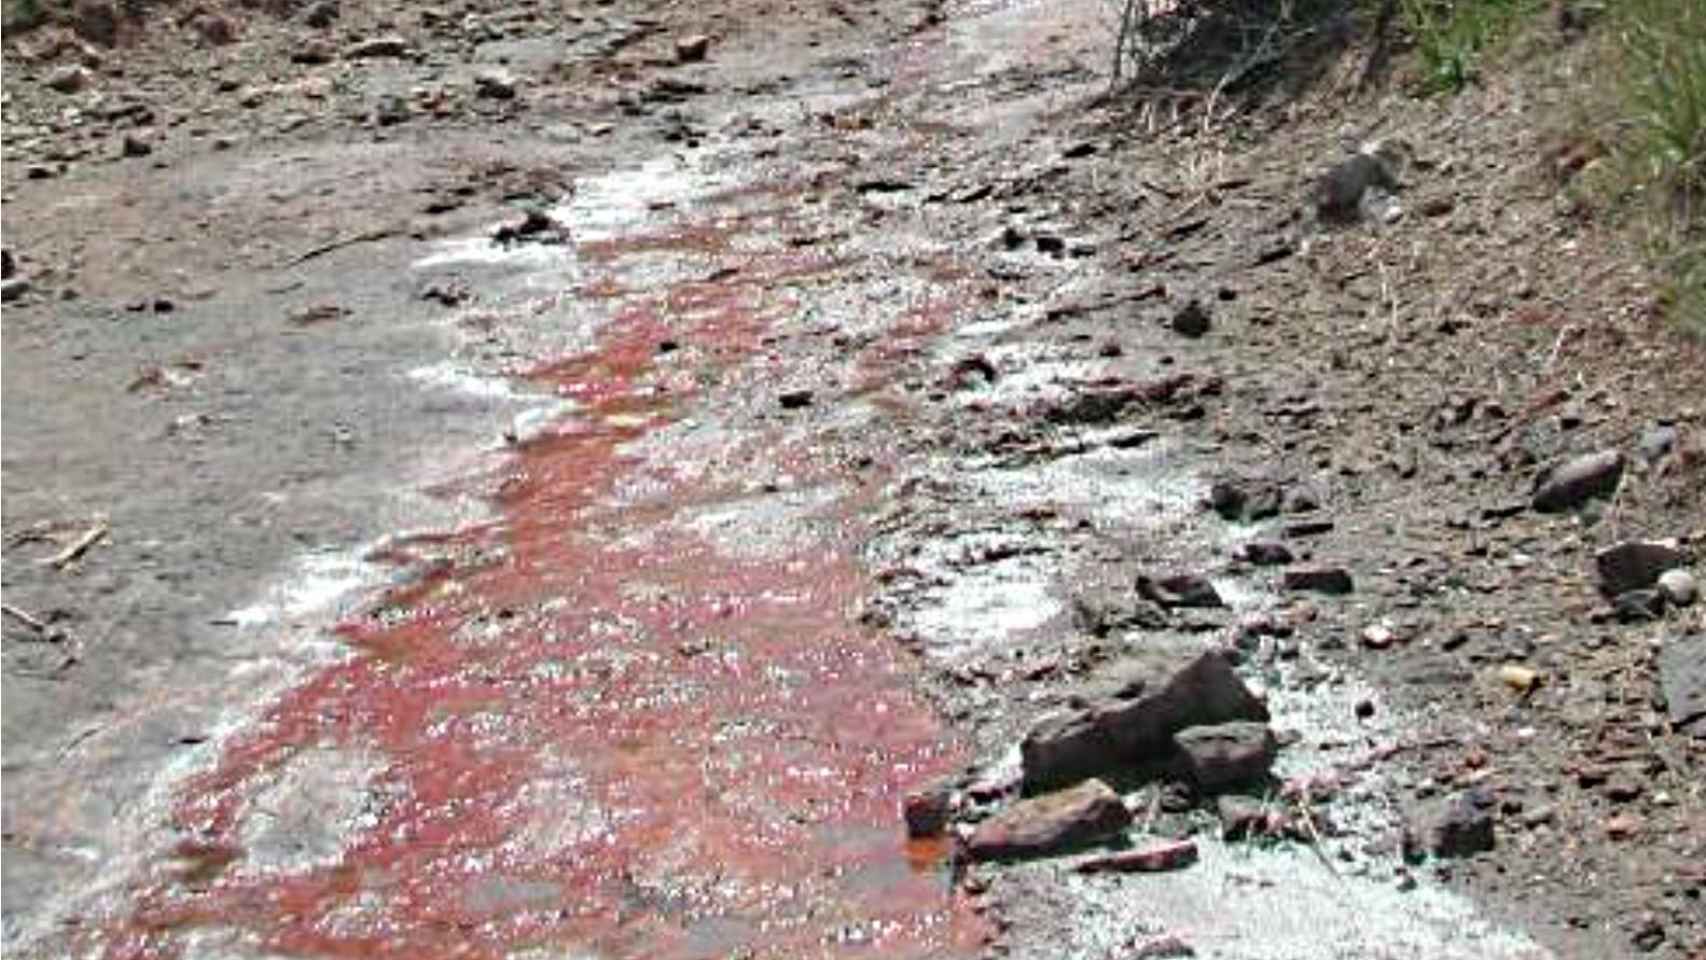 Las placas de sal y la coloración rojiza por salinización de la Malesa, afluente del torrente de Soldevila.